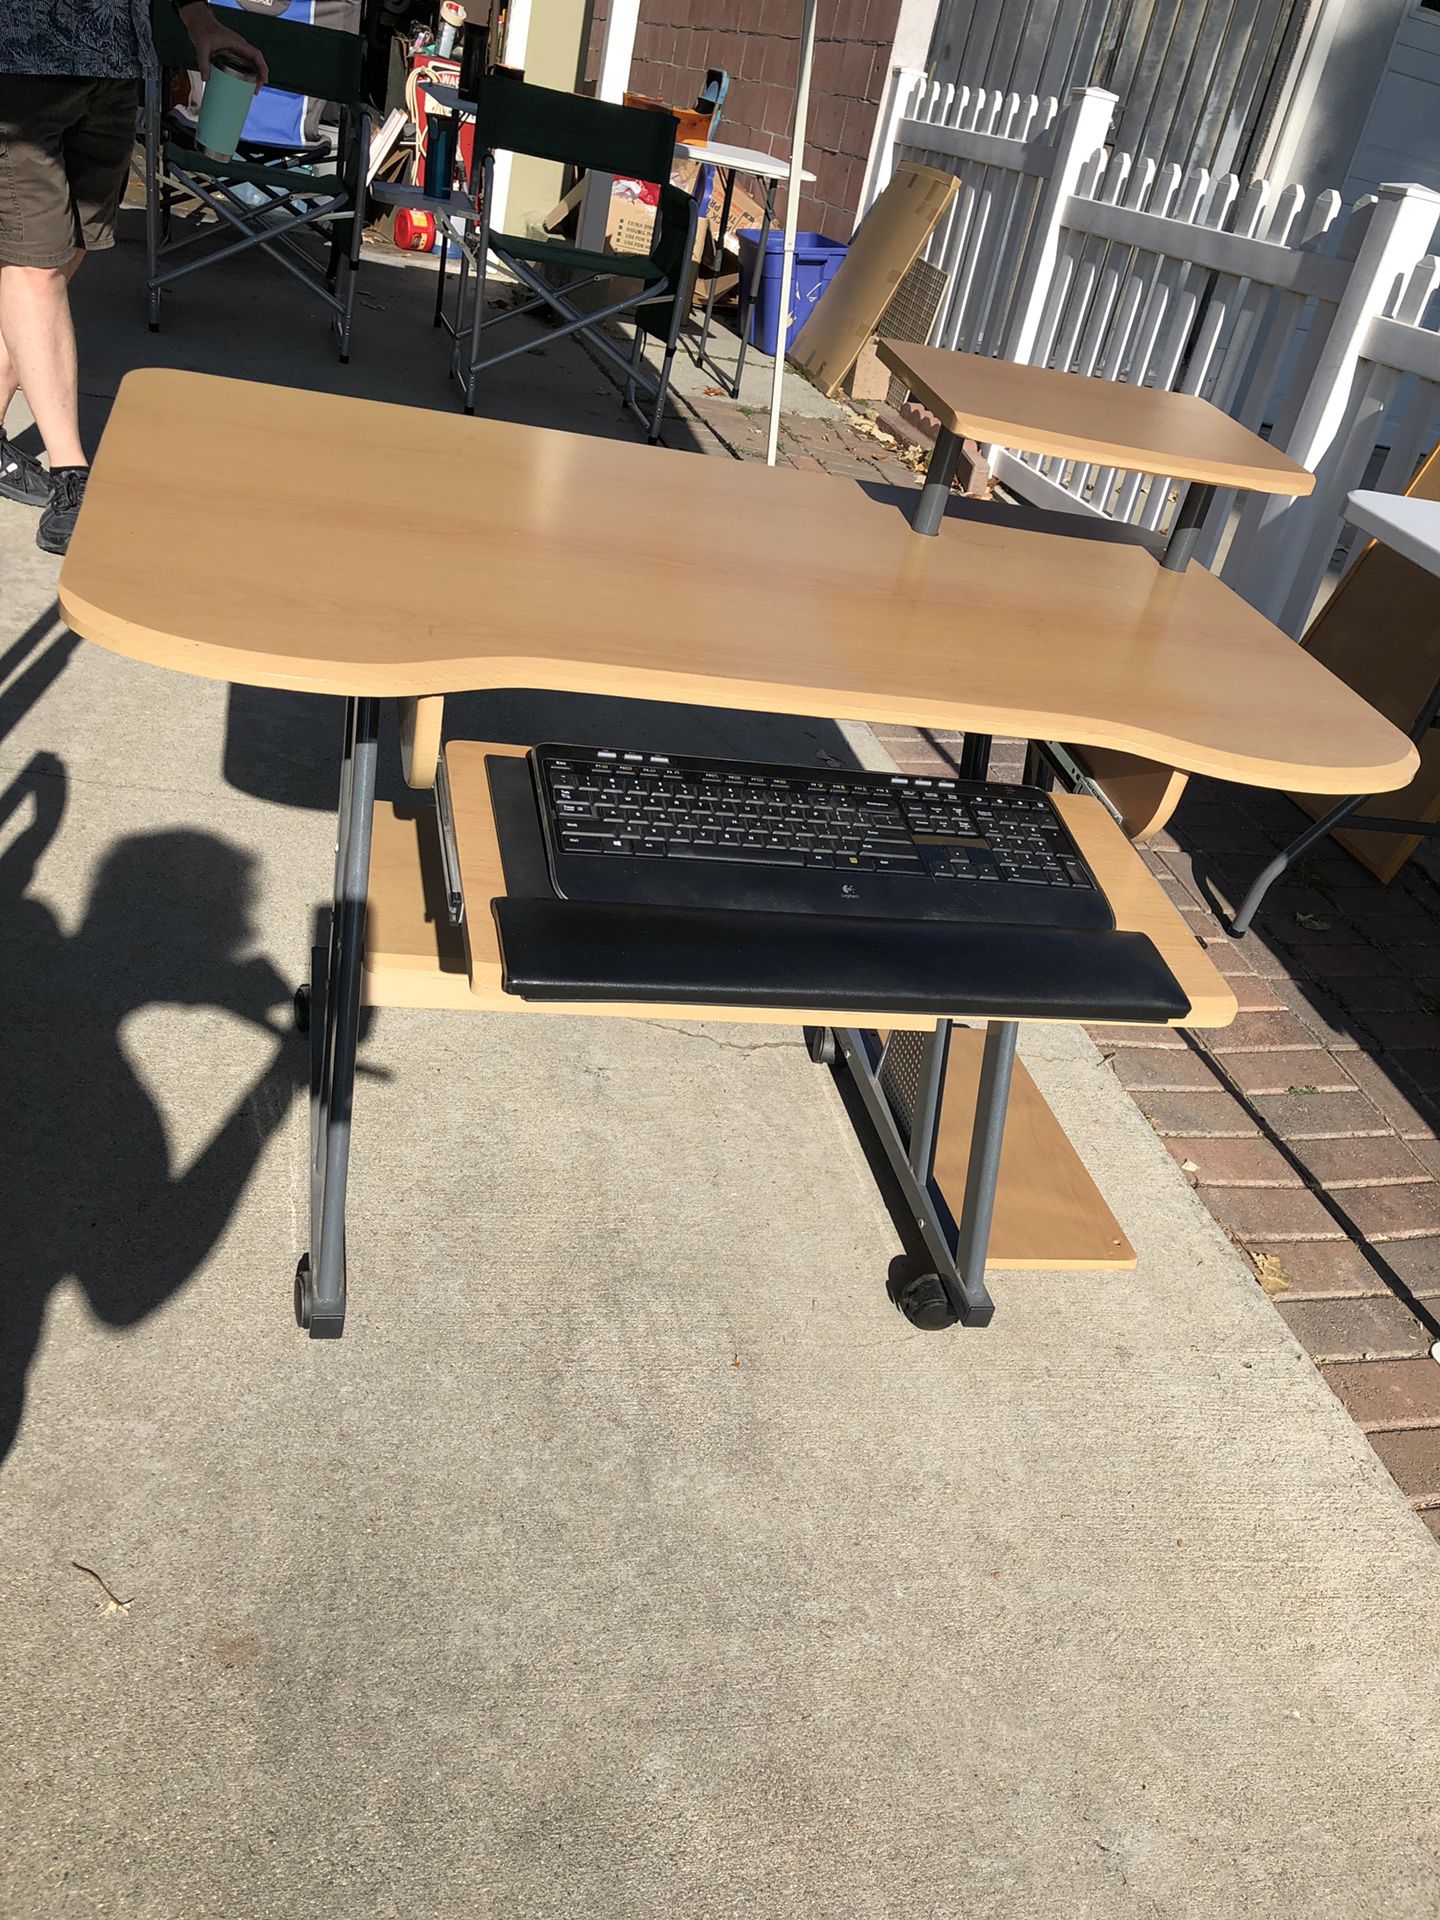 Desk with wireless keyboard